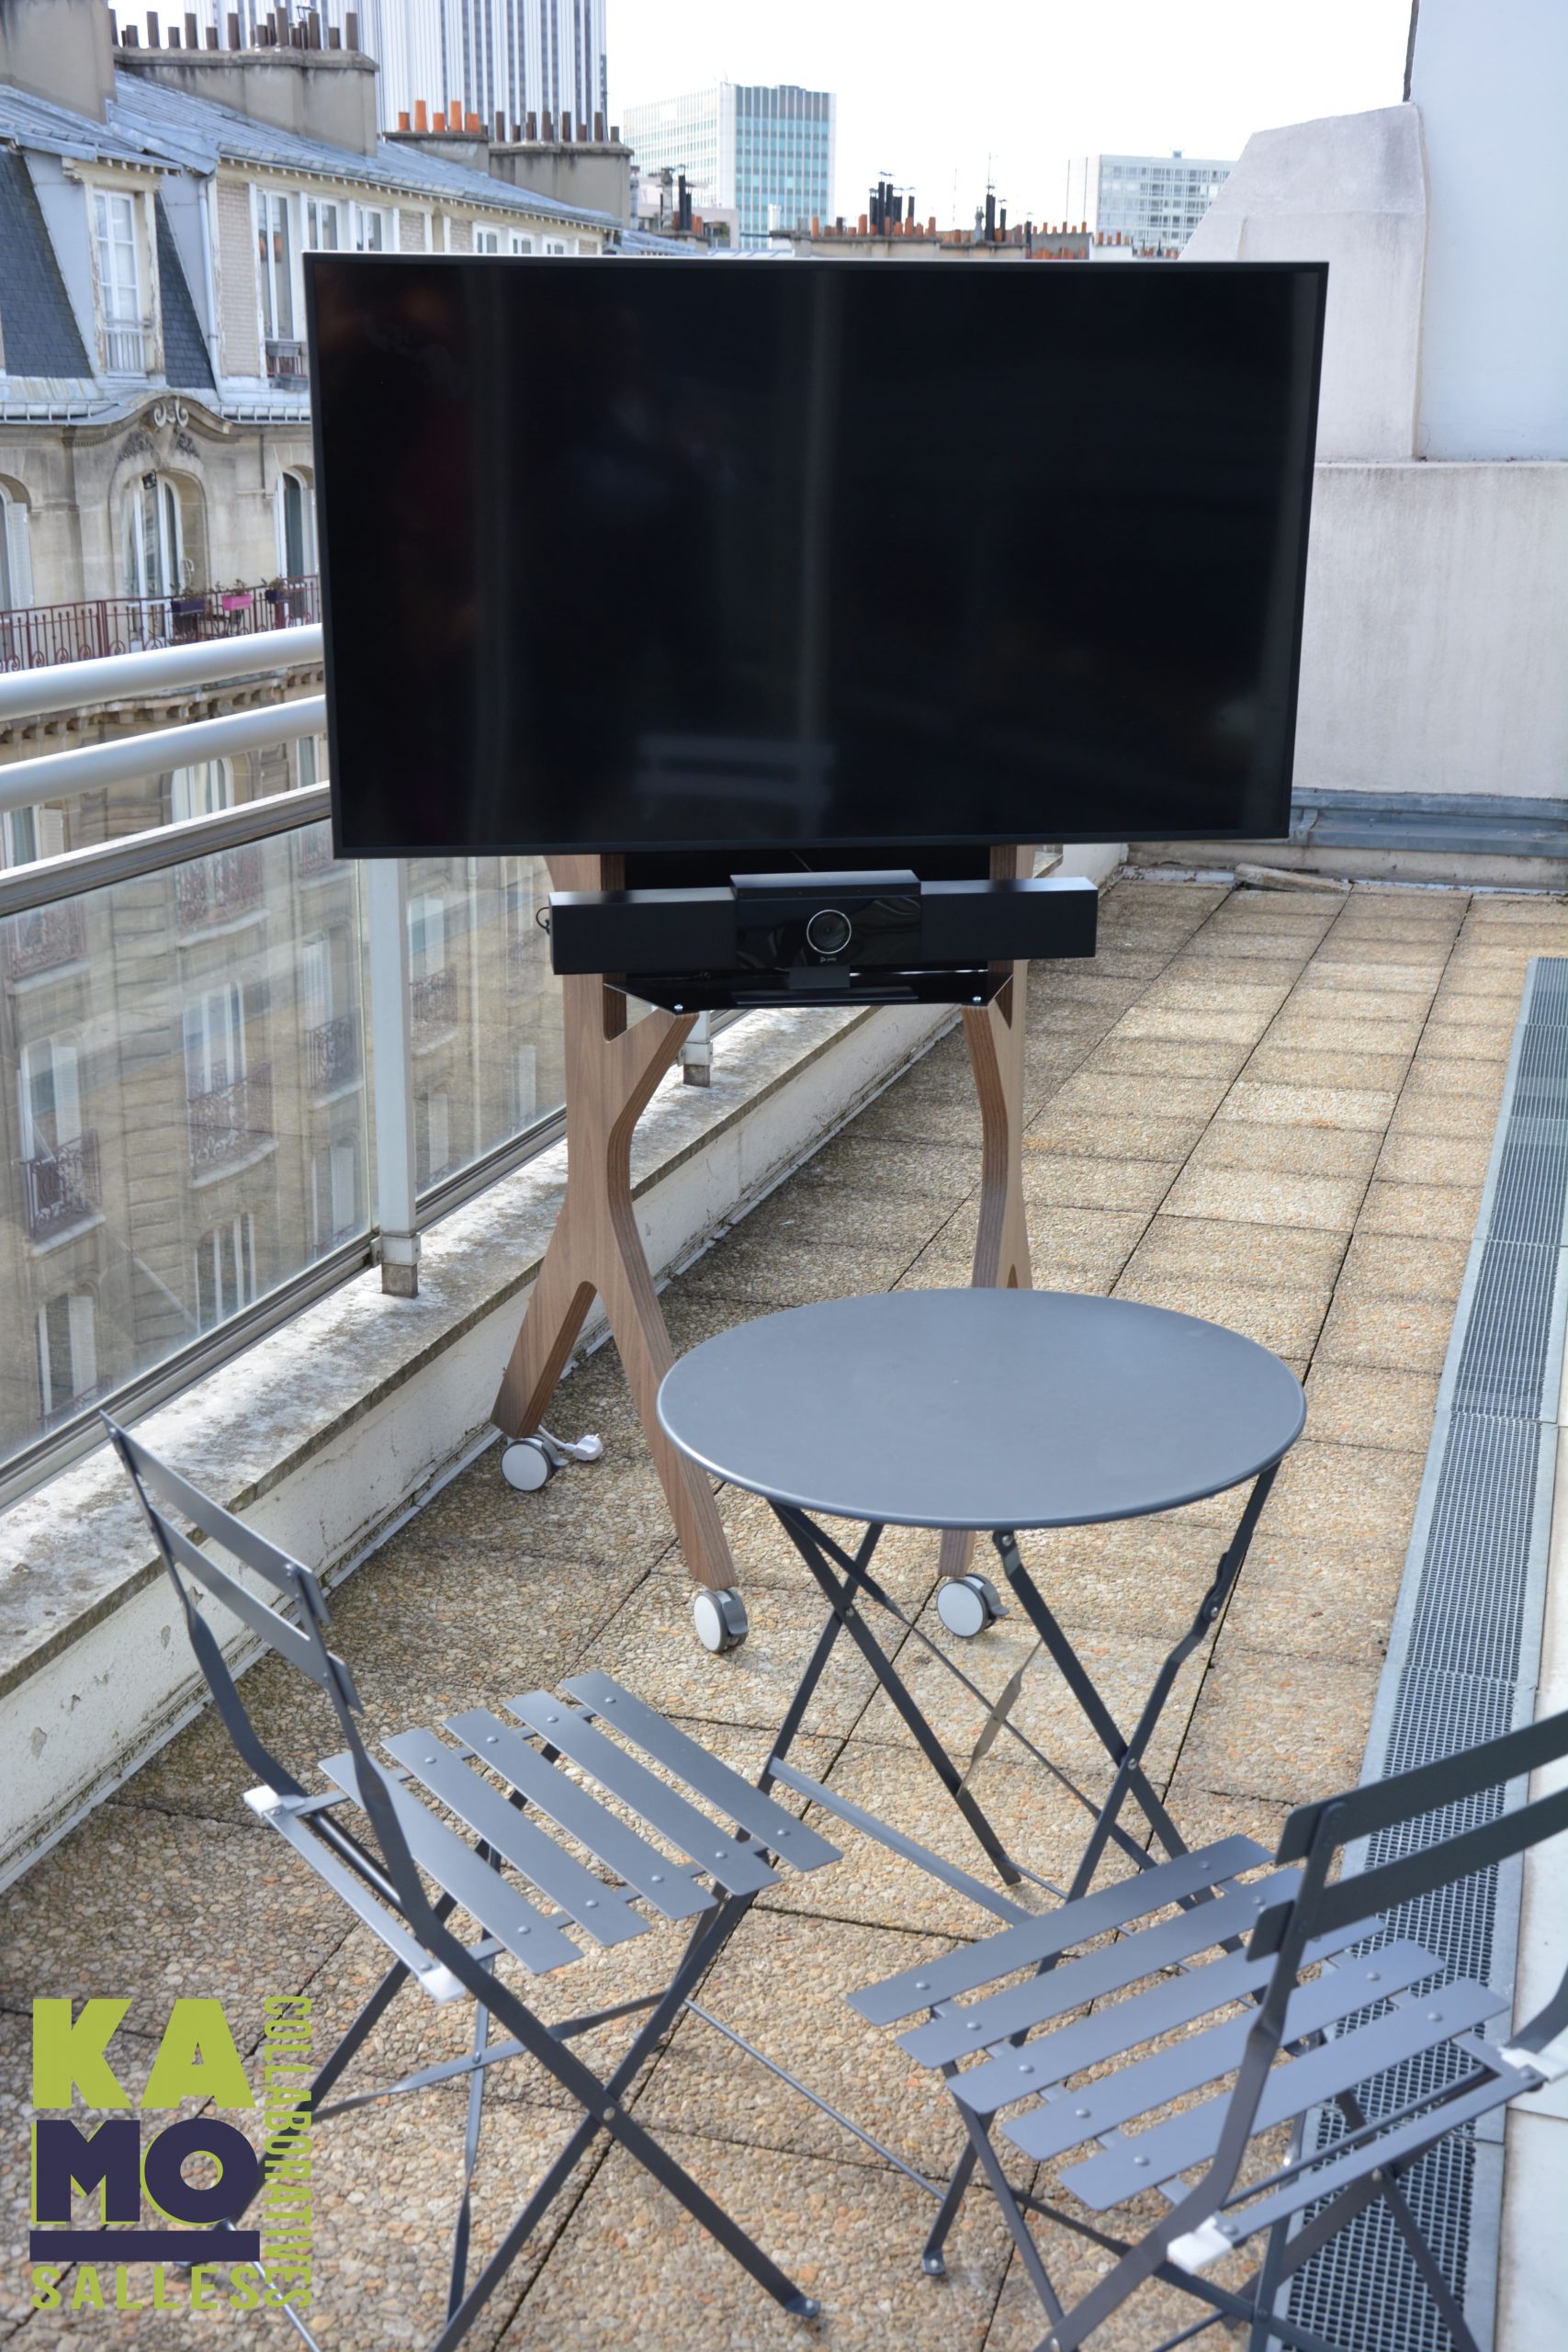 Verrijdbaar beeldscherm die op een balkon in de buitenlucht staat